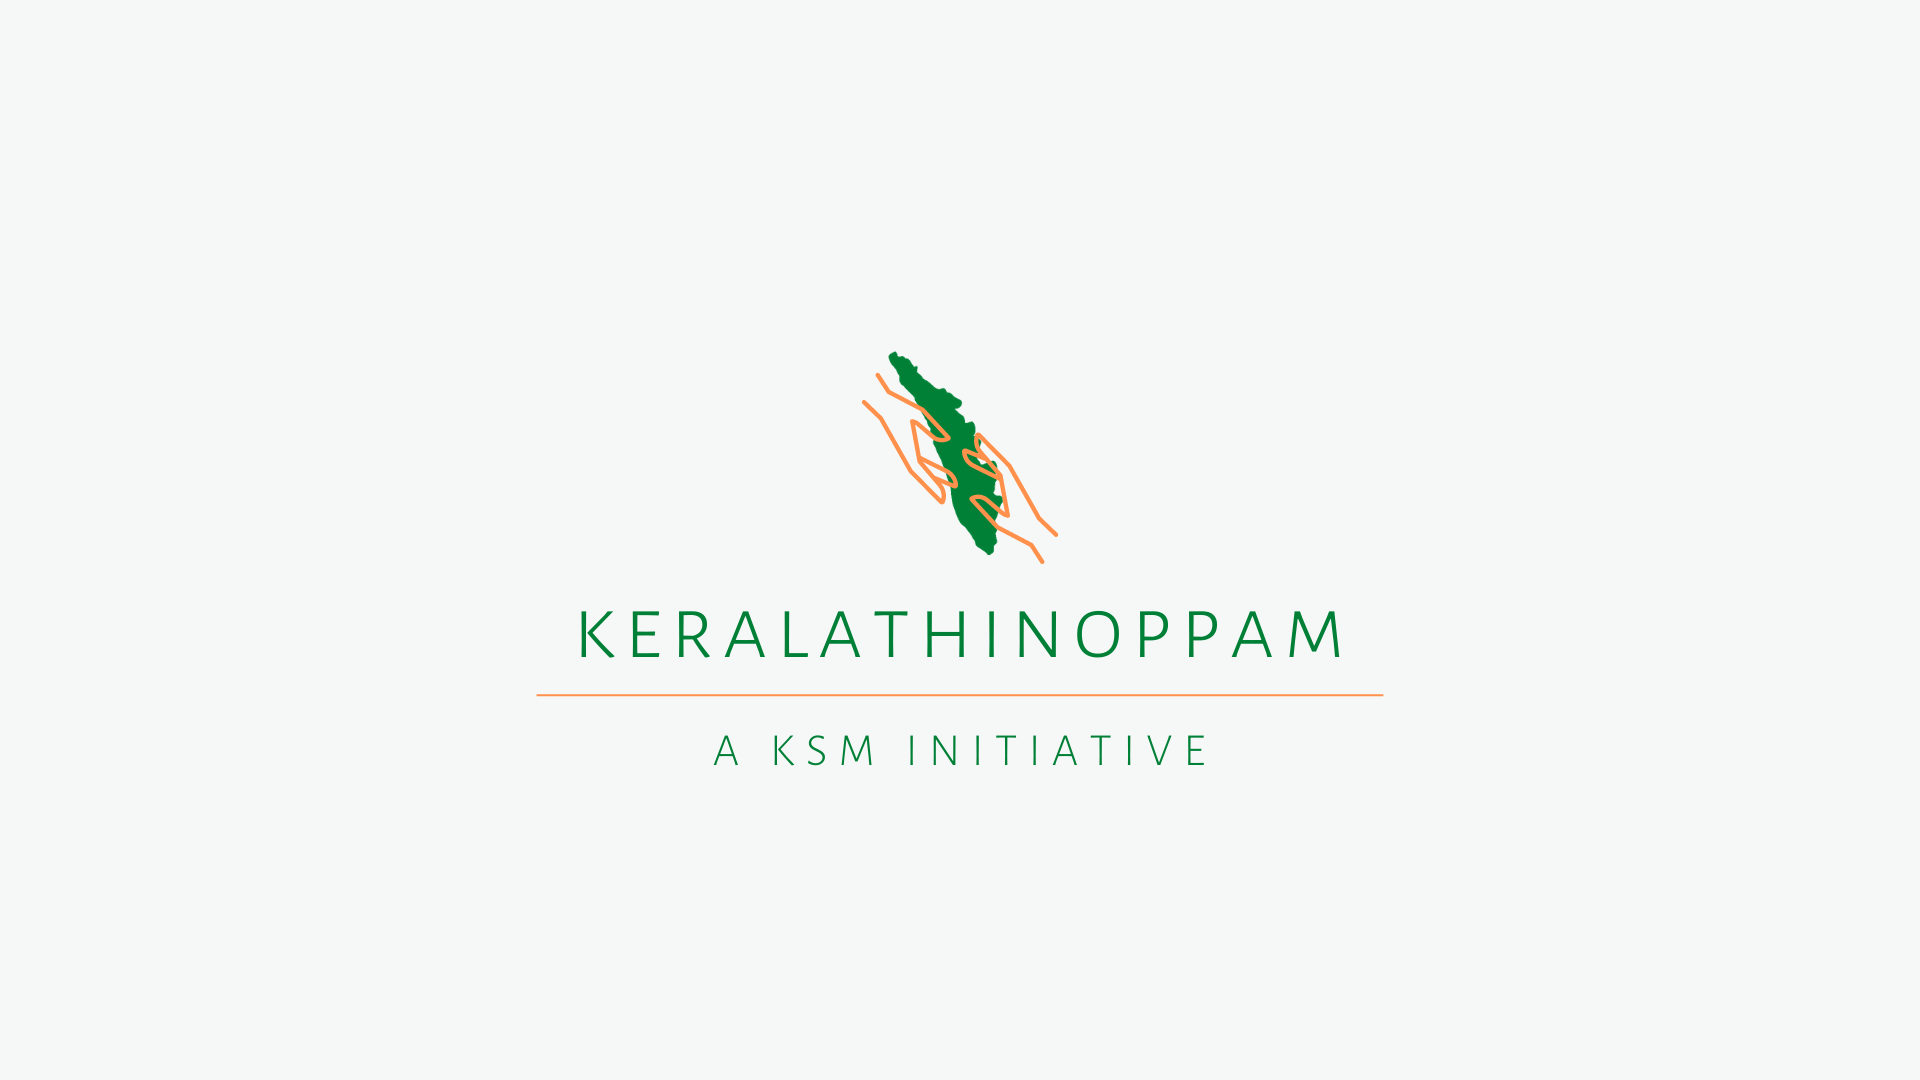 Keralathinoppam